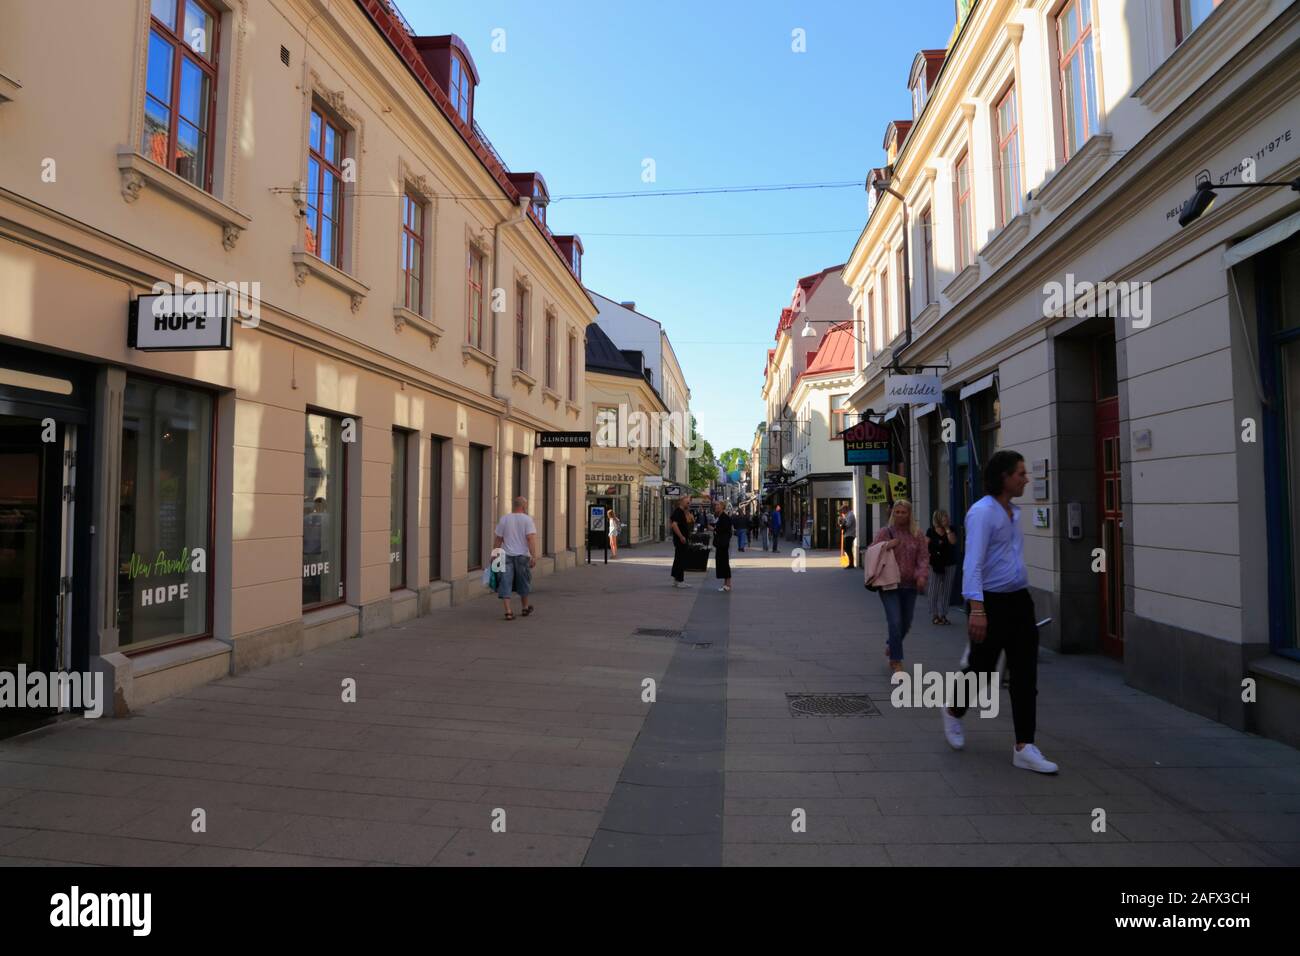 Menschen gehen in einer ruhigen Gasse im Einkaufsviertel von Stadtzentrum von Göteborg, Schweden. Stockfoto